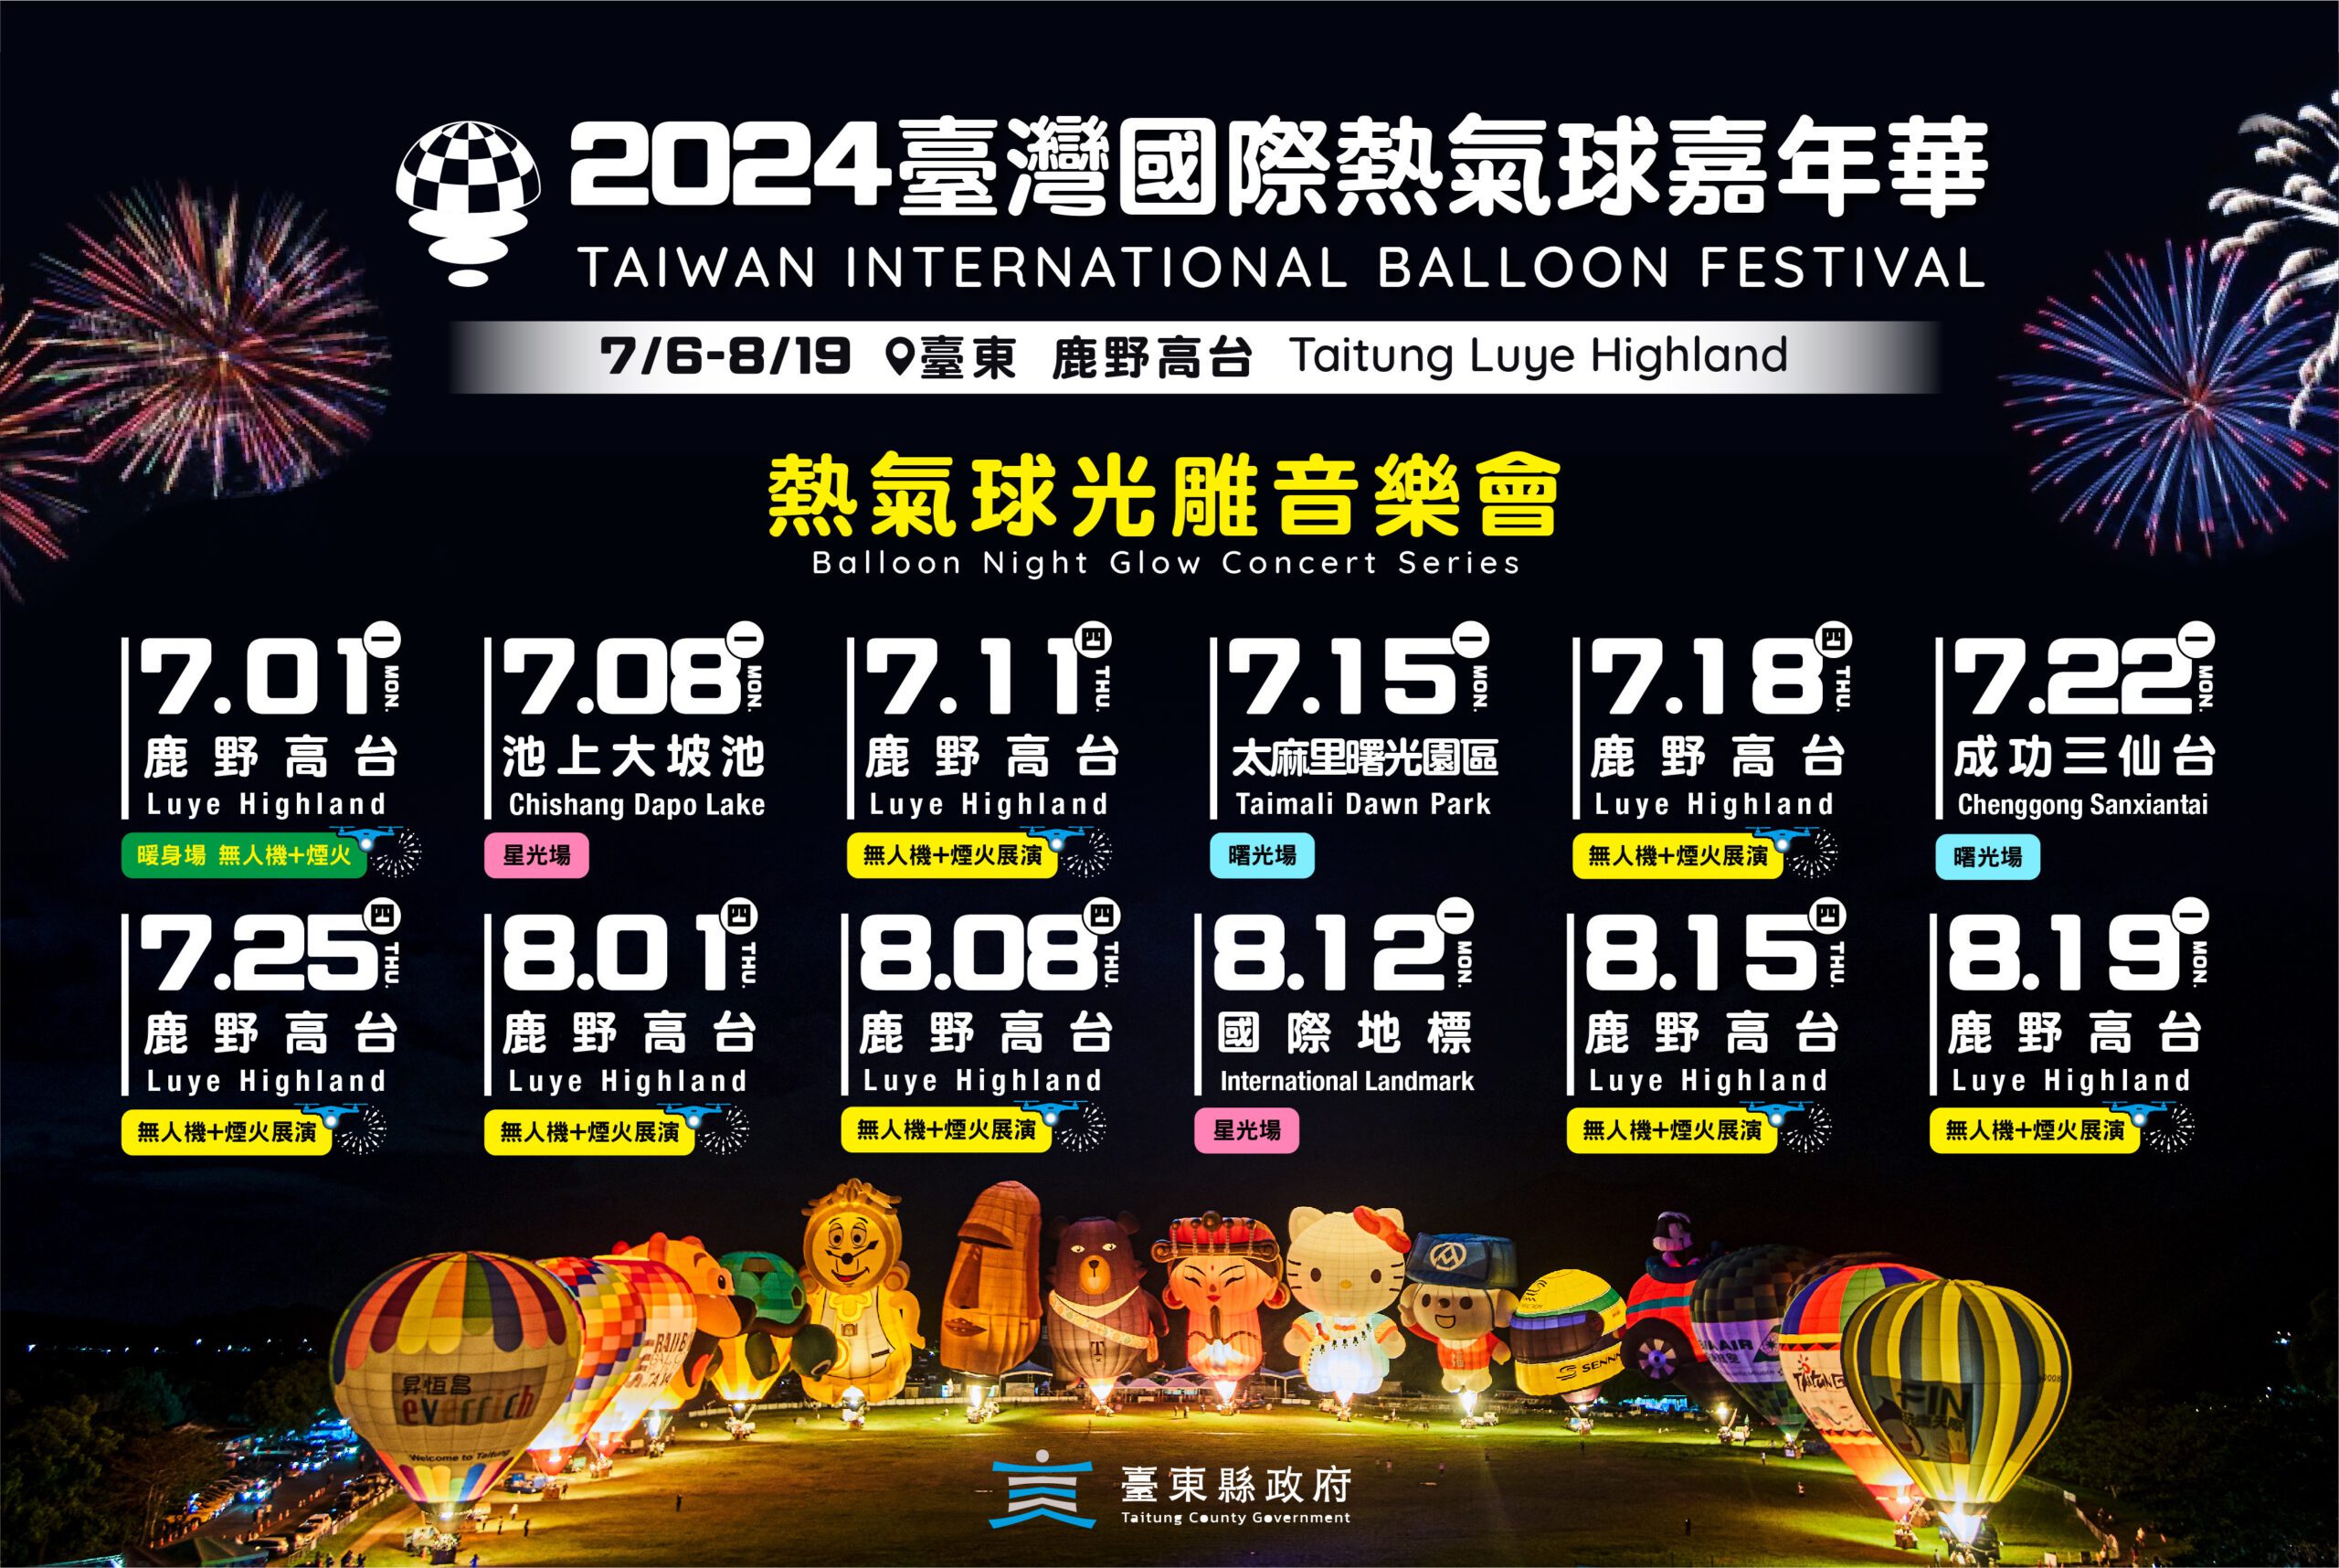 臺灣國際熱氣球嘉年華7月登場-12場熱氣球光雕音樂會場次創新高